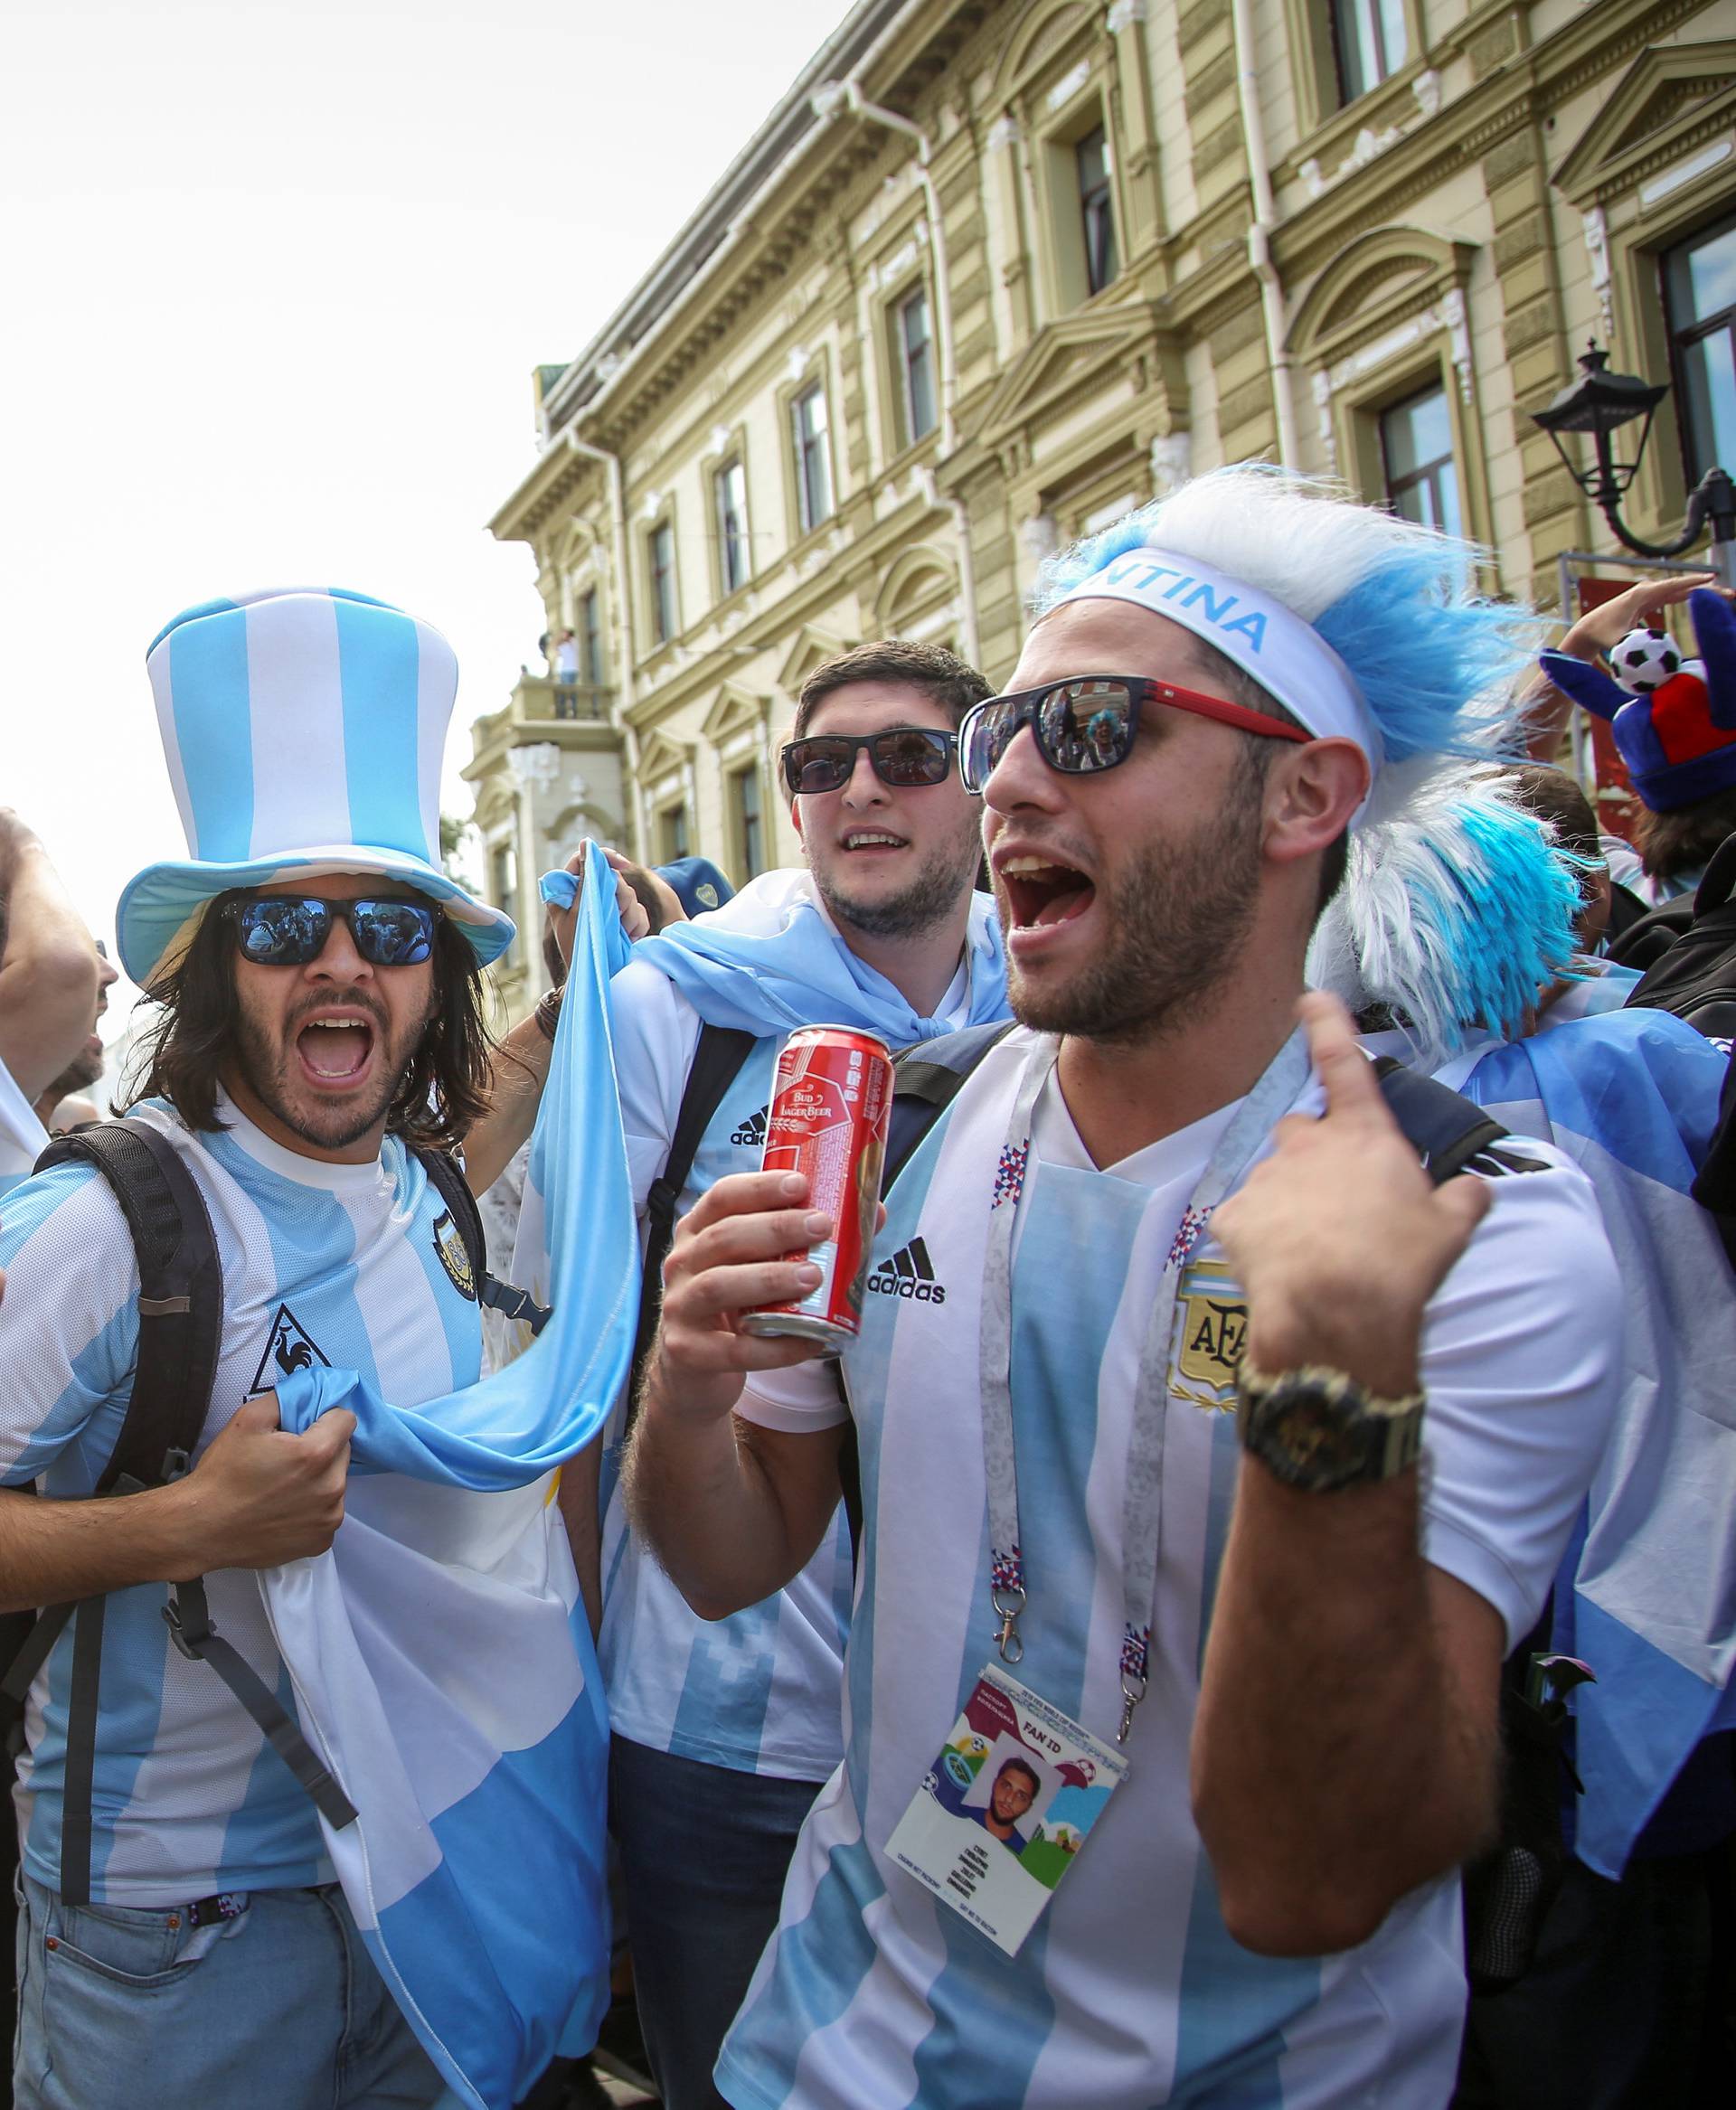 FIFA World Cup - Group D - Argentina vs Croatia